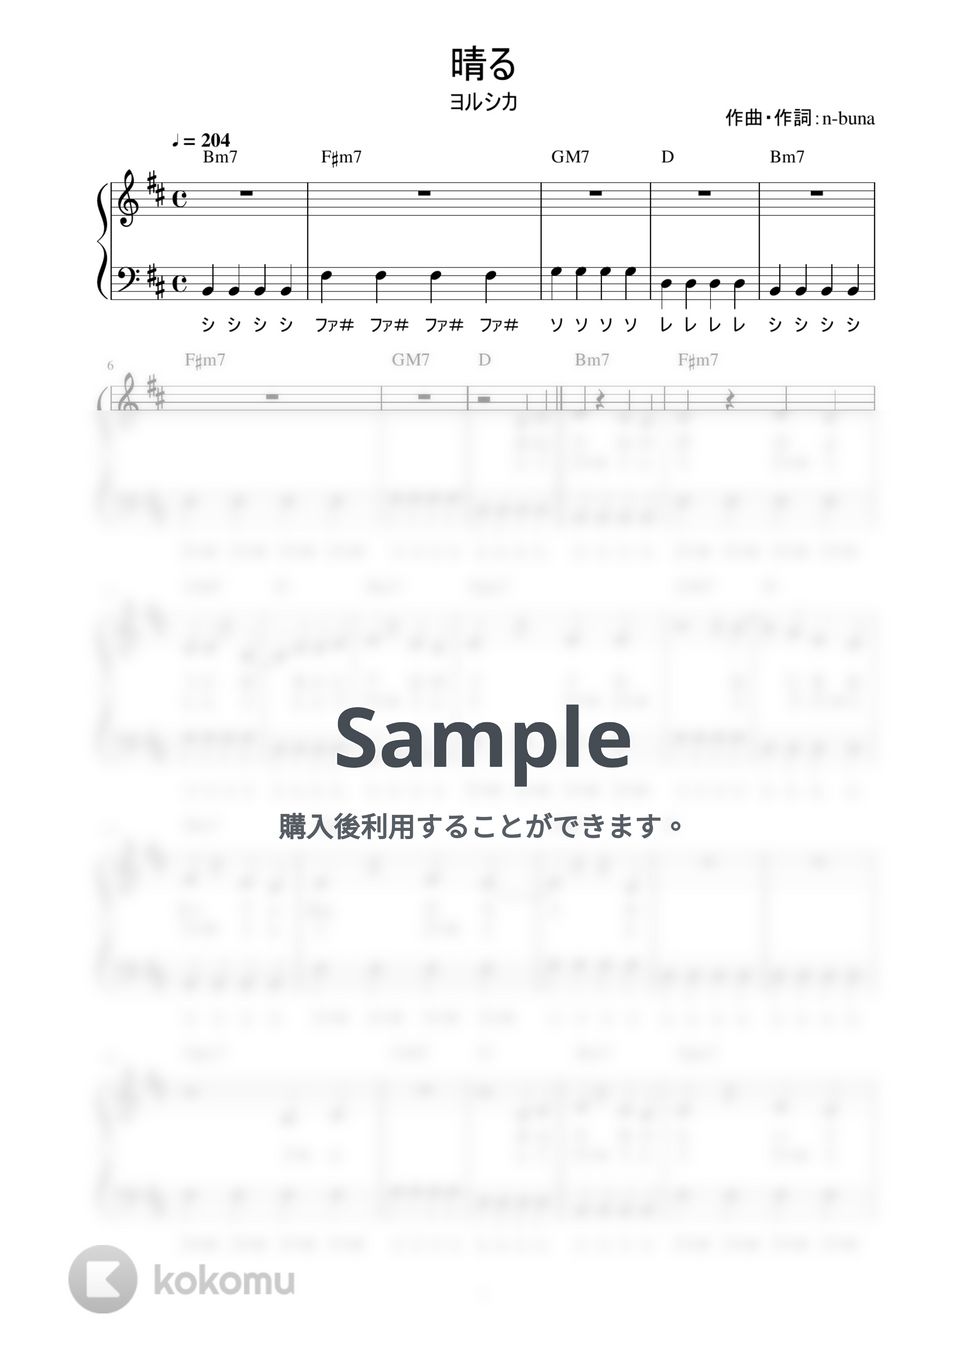 ヨルシカ - 晴る (かんたん / 歌詞付き / ドレミ付き / 初心者) by piano.tokyo